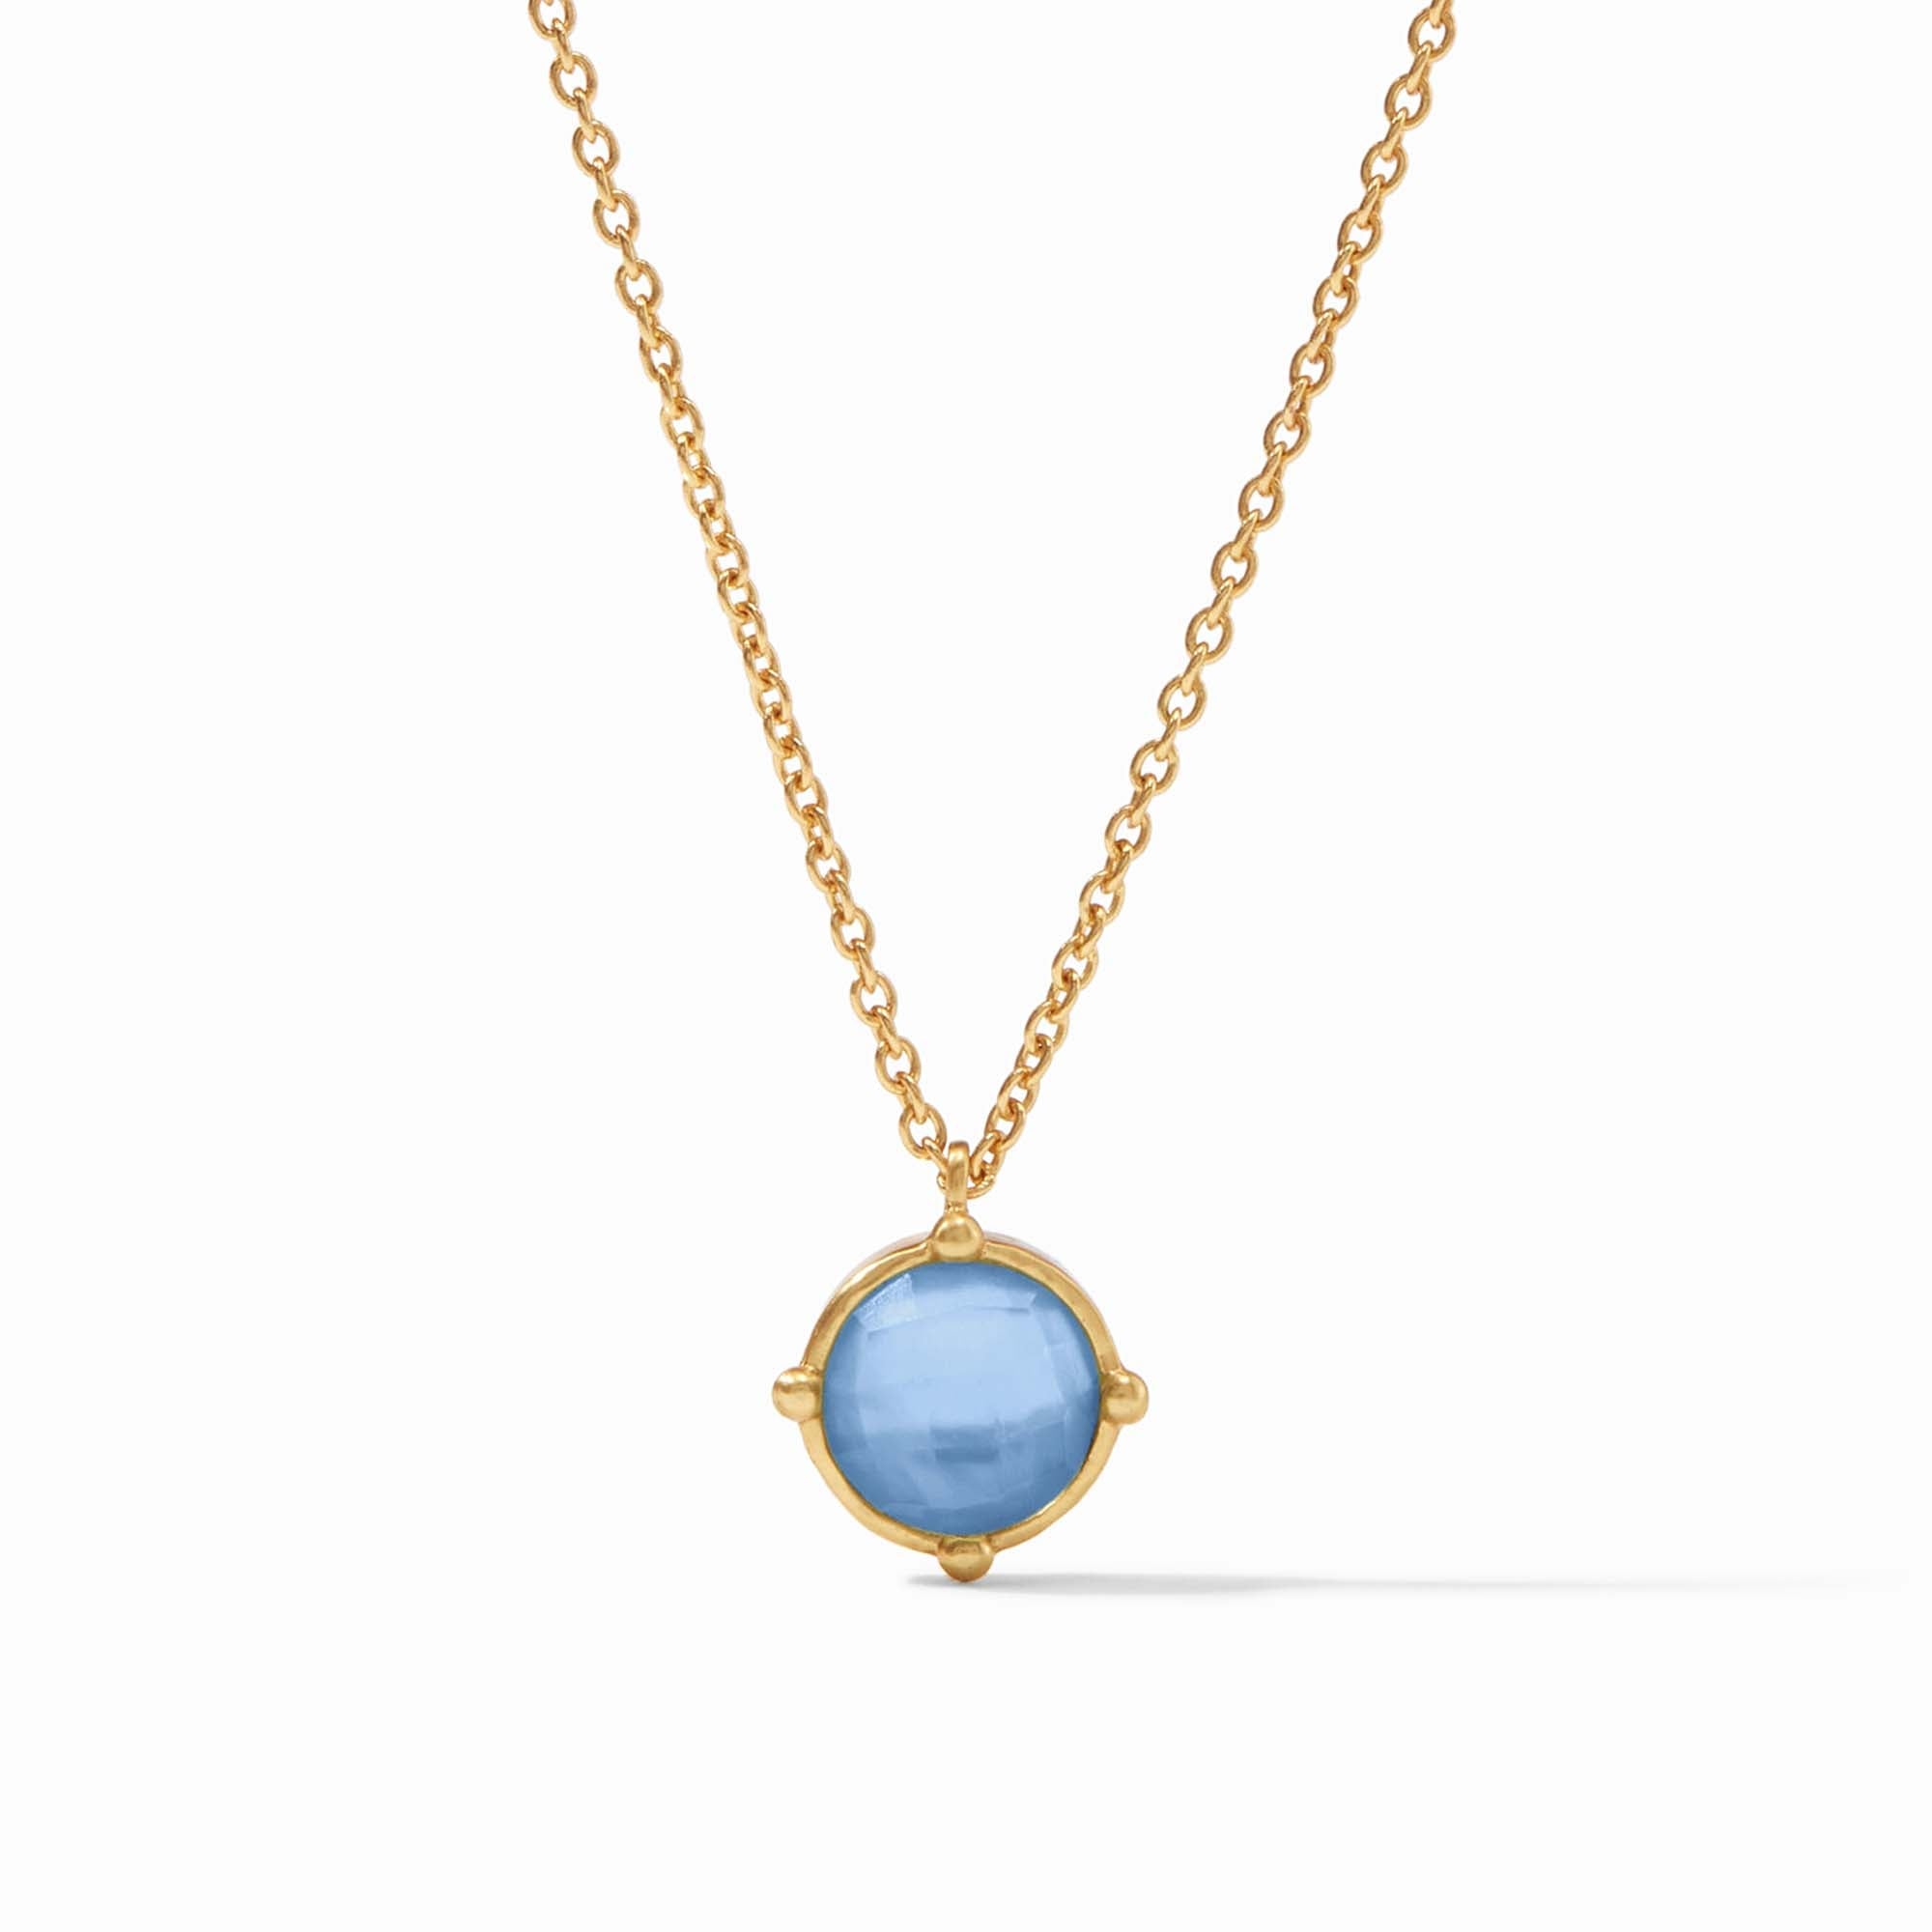 Julie Vos - Honeybee Solitaire Necklace, Iridescent Chalcedony Blue